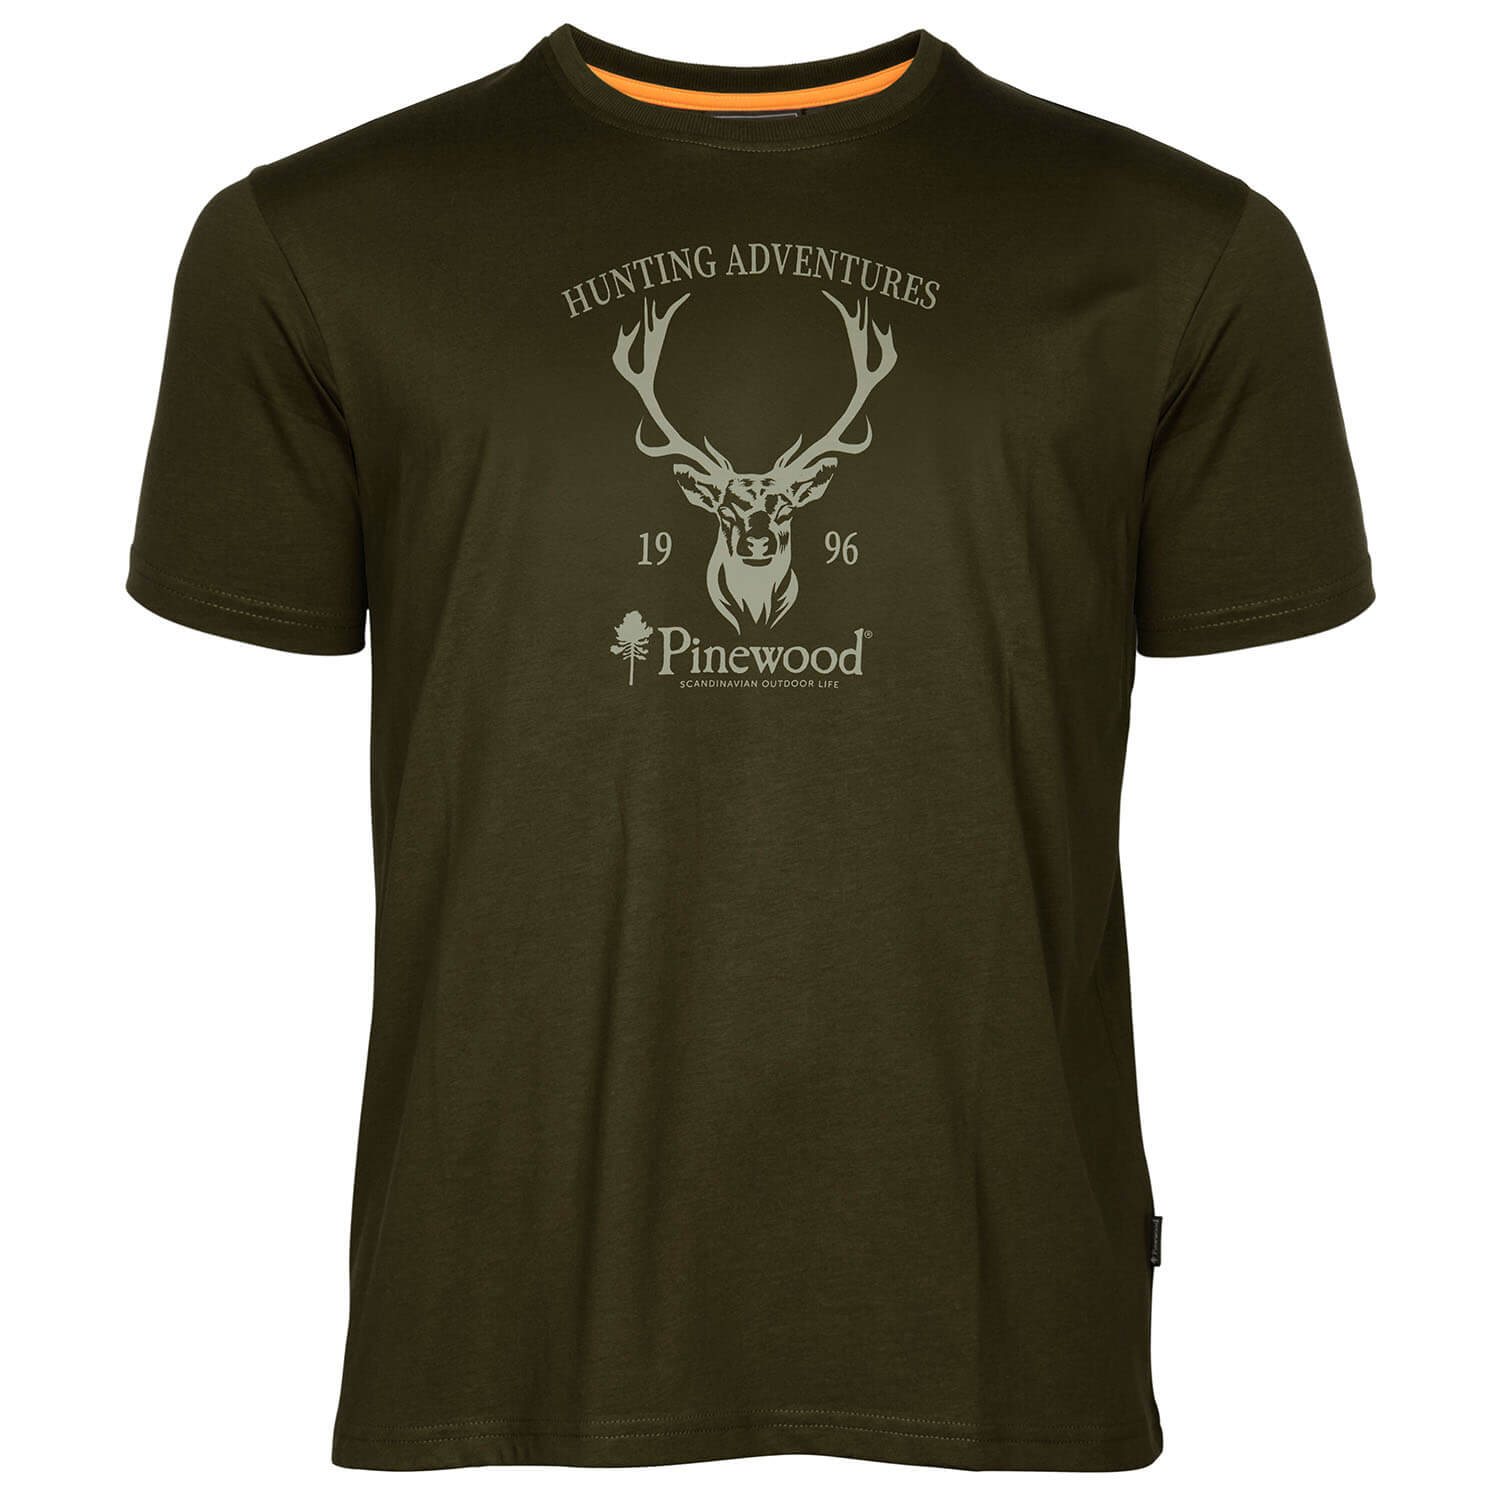  Pinewood T-shirt Red Deer (Groen) - Zomer jachtkleding